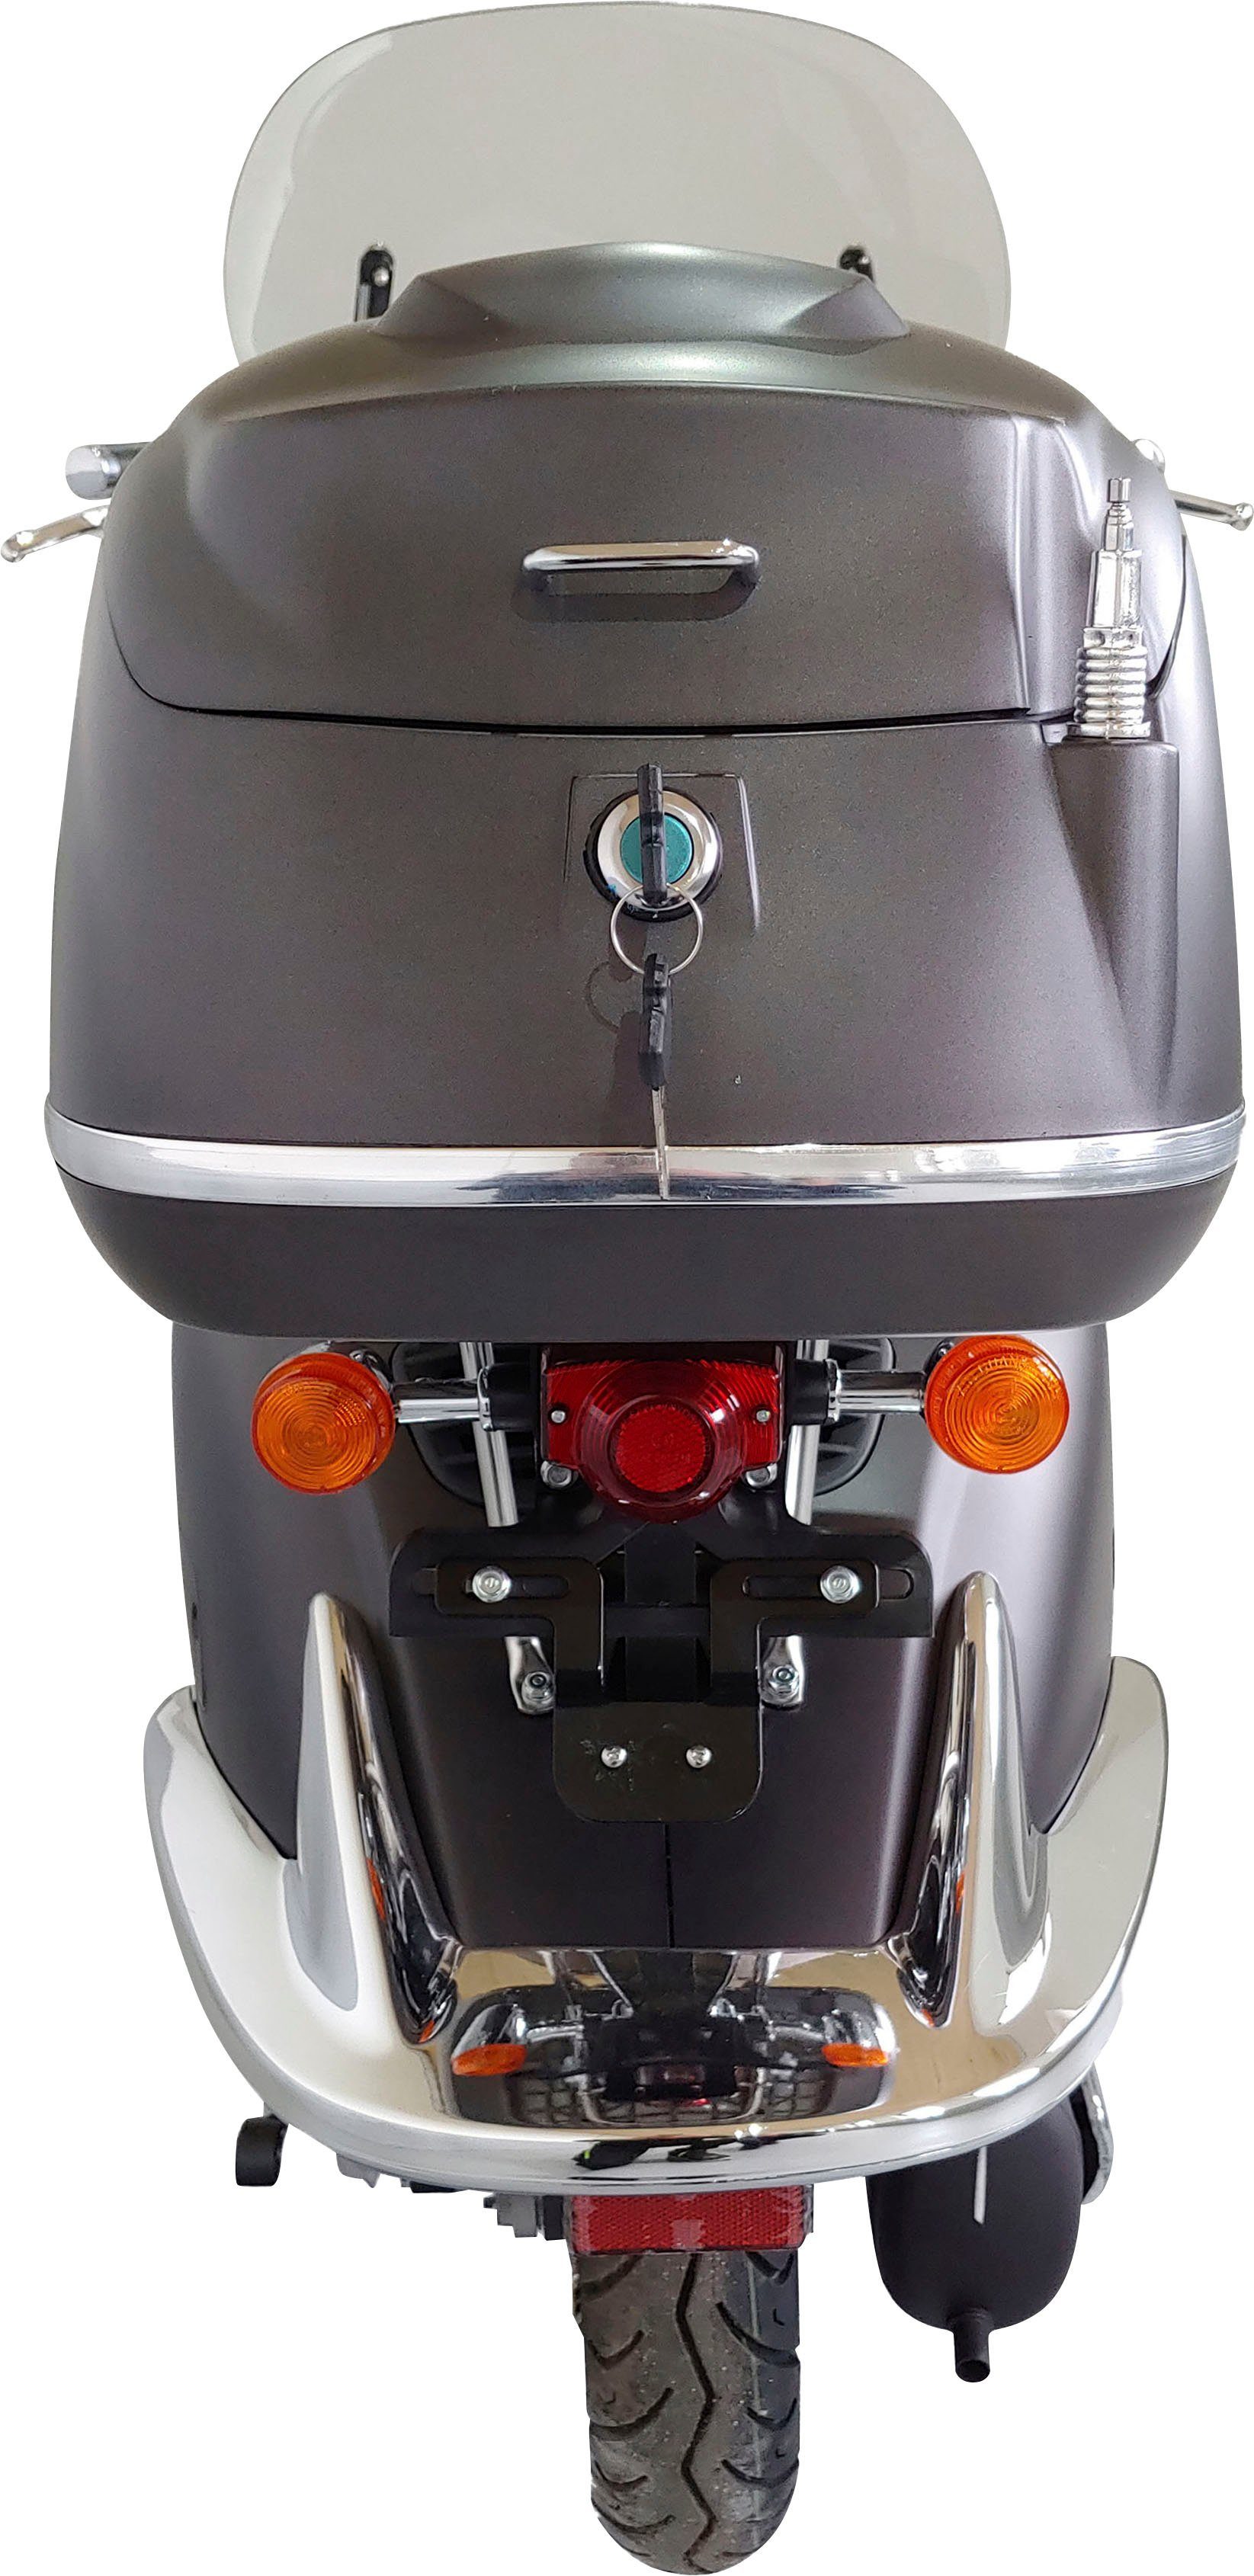 Alpha Motors Motorroller 45 Limited, Firenze km/h, mattschwarz 5 ccm, 50 | Euro braun